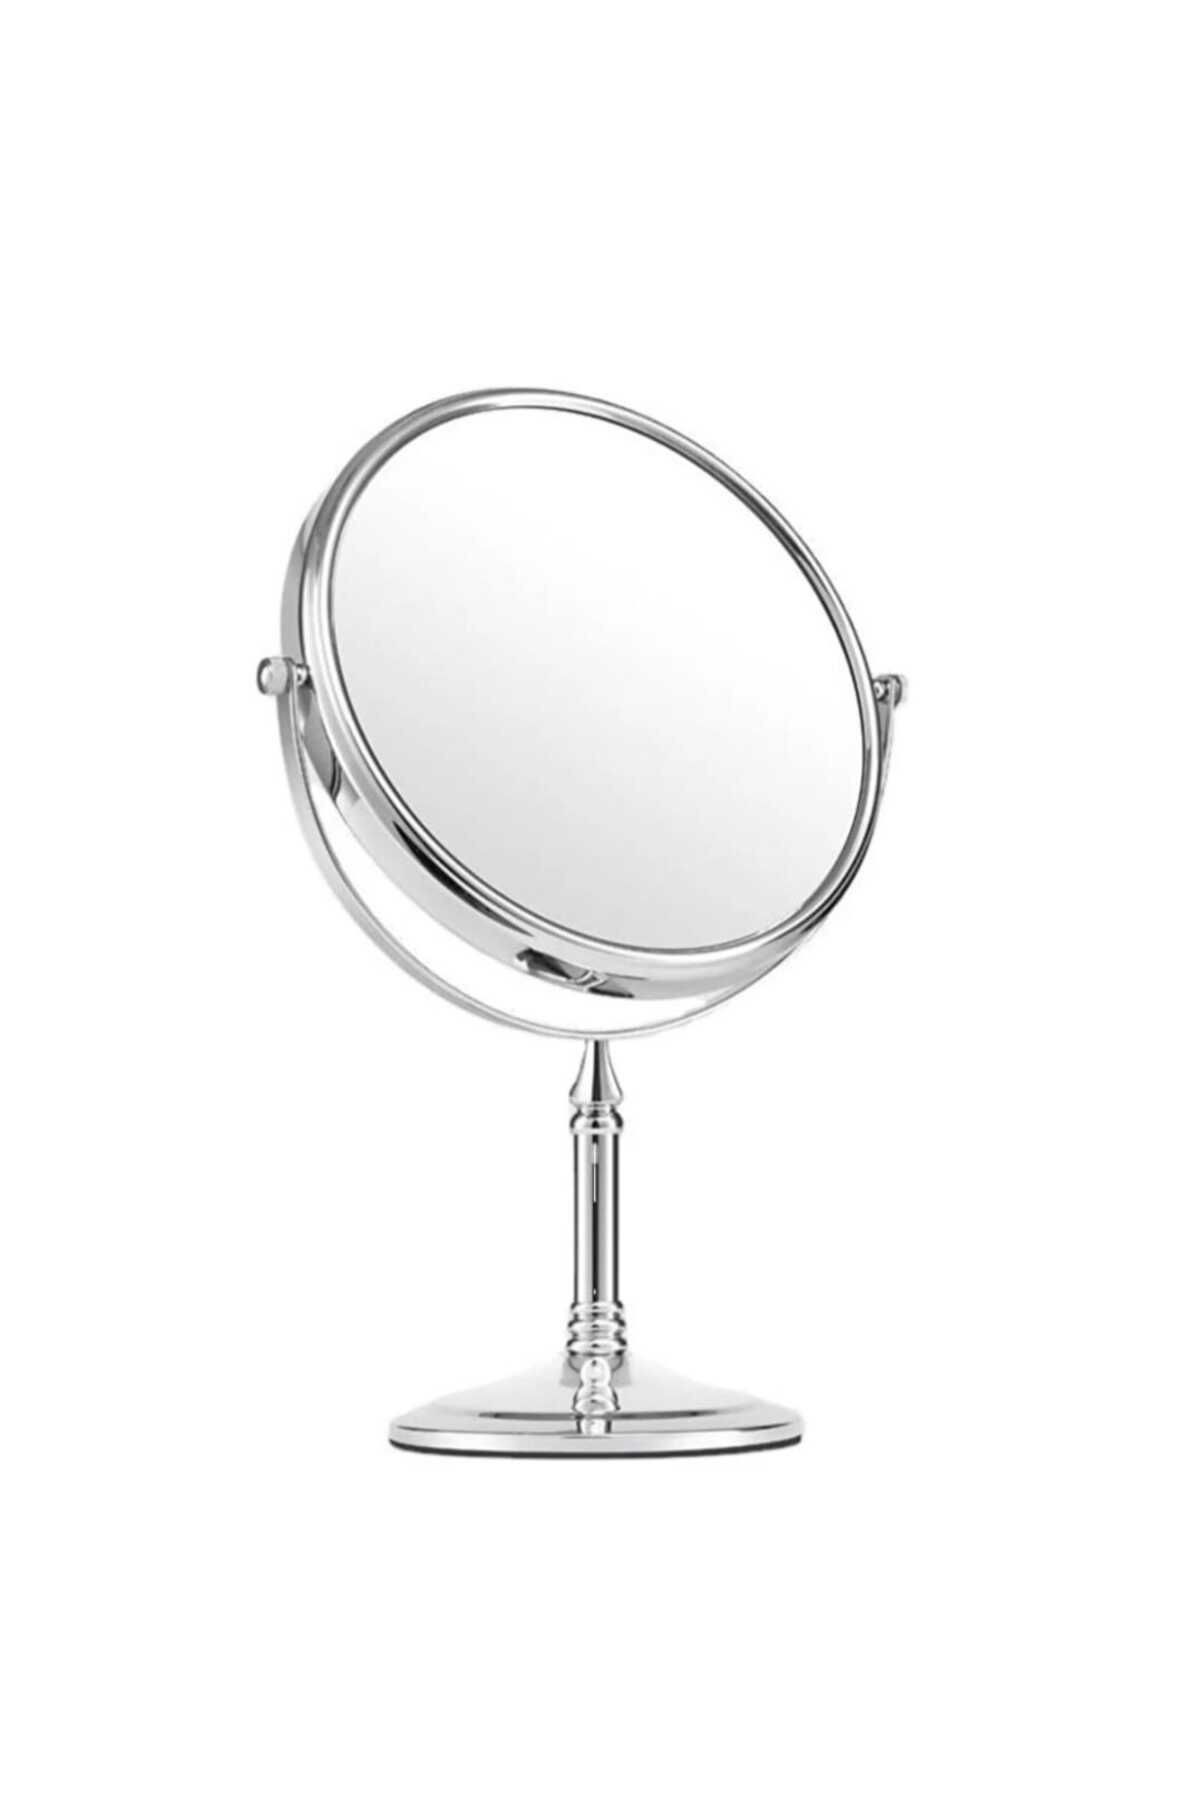 gaman Dekoratif Plastik Yuvarlak Makyaj Aynası Makeup Mirror Plastik Masa Aynası Ayaklı Makyaj Aynası